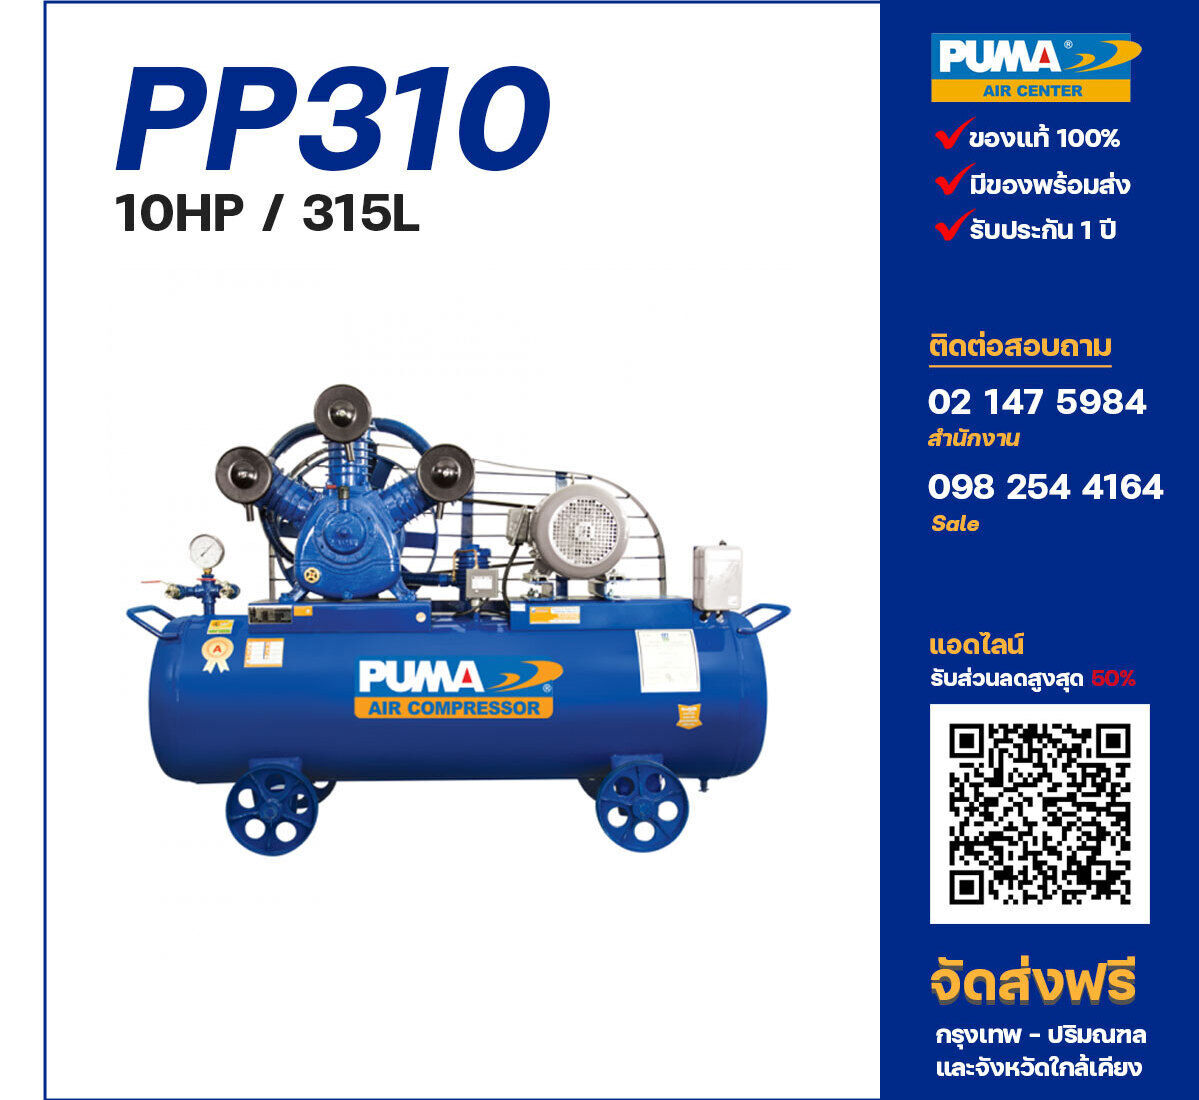 ปั๊มลมพูม่า PUMA PP310-PPM380V ปั๊มลมลูกสูบ ขนาด 3 สูบ 10 แรงม้า 315 ลิตร PUMA พร้อมมอเตอร์ PUMA ไฟ 380V ส่งฟรี กรุงเทพฯ-ปริมณฑล รับประกัน 1 ปี
